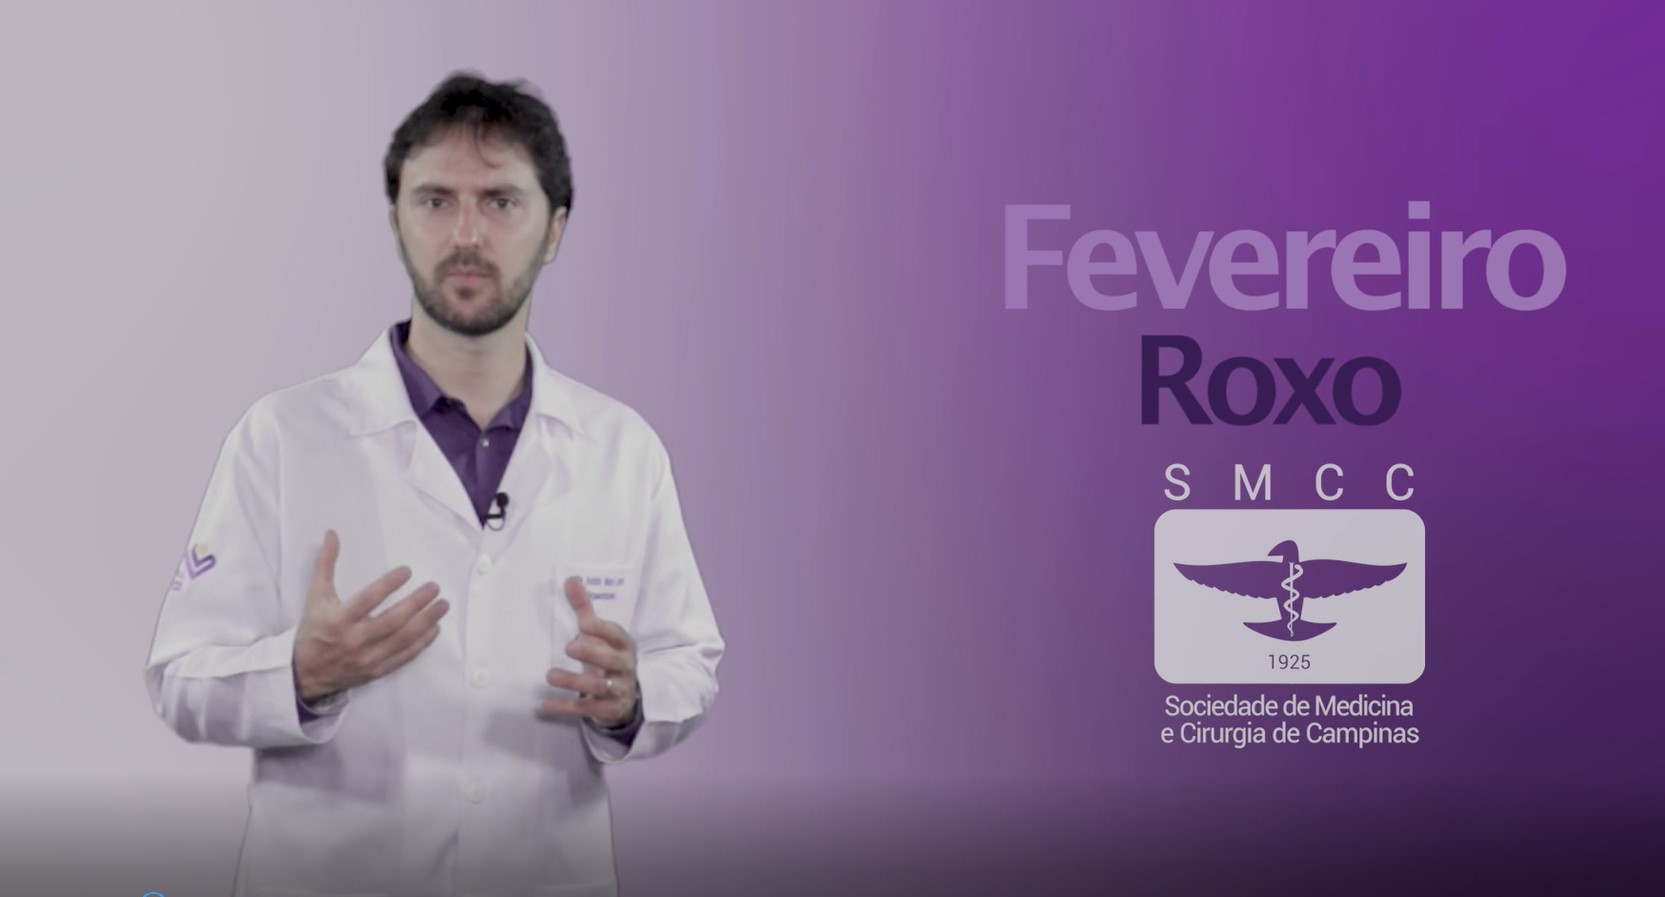 Fevereiro roxo – SMCC produz vídeo para orientar a população sobre lúpus e fibromialgia